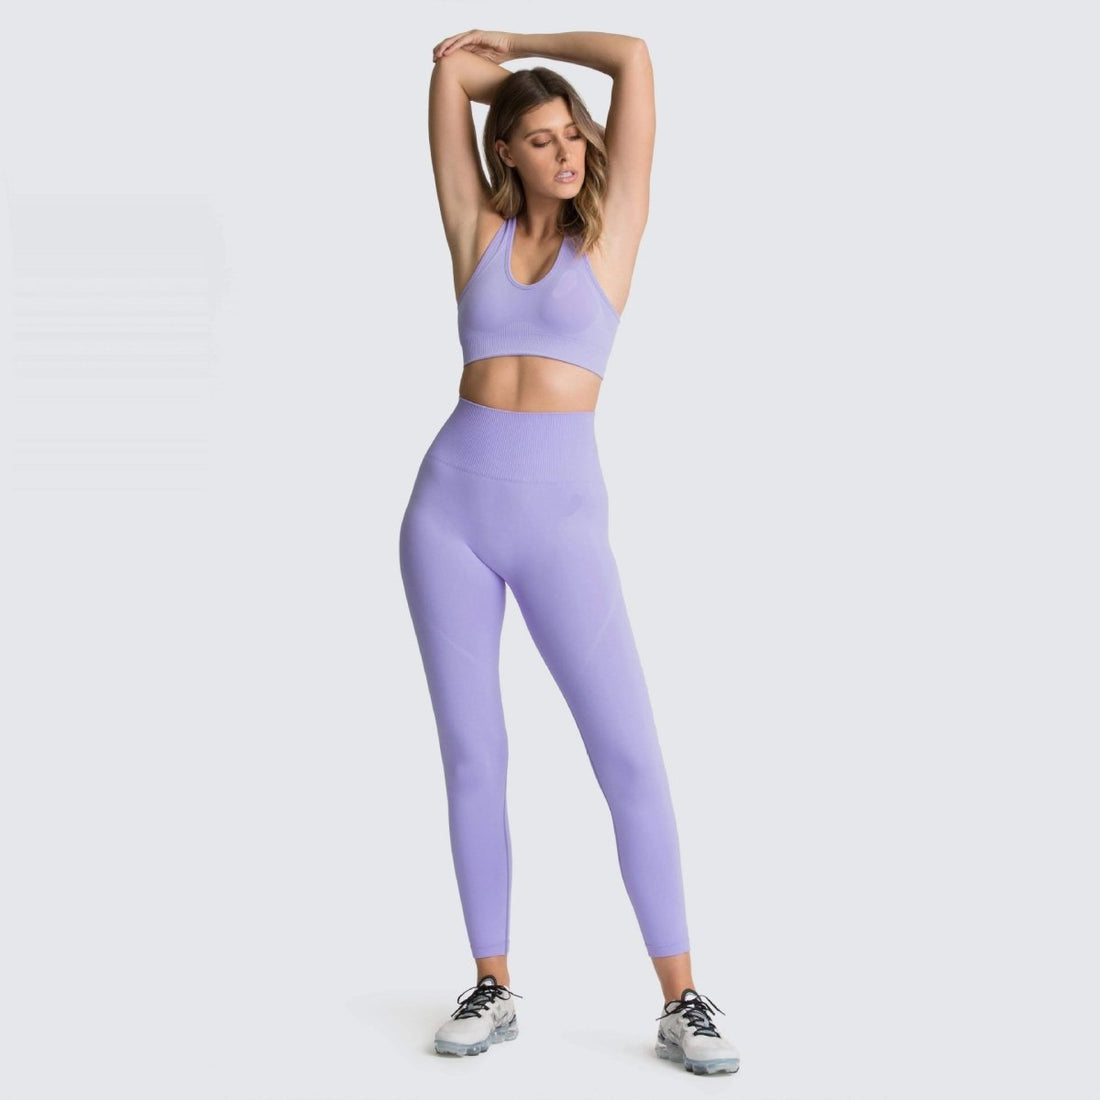 Bombshell SportsWear light/lilac purple workout set size XS- WORN TWICE!